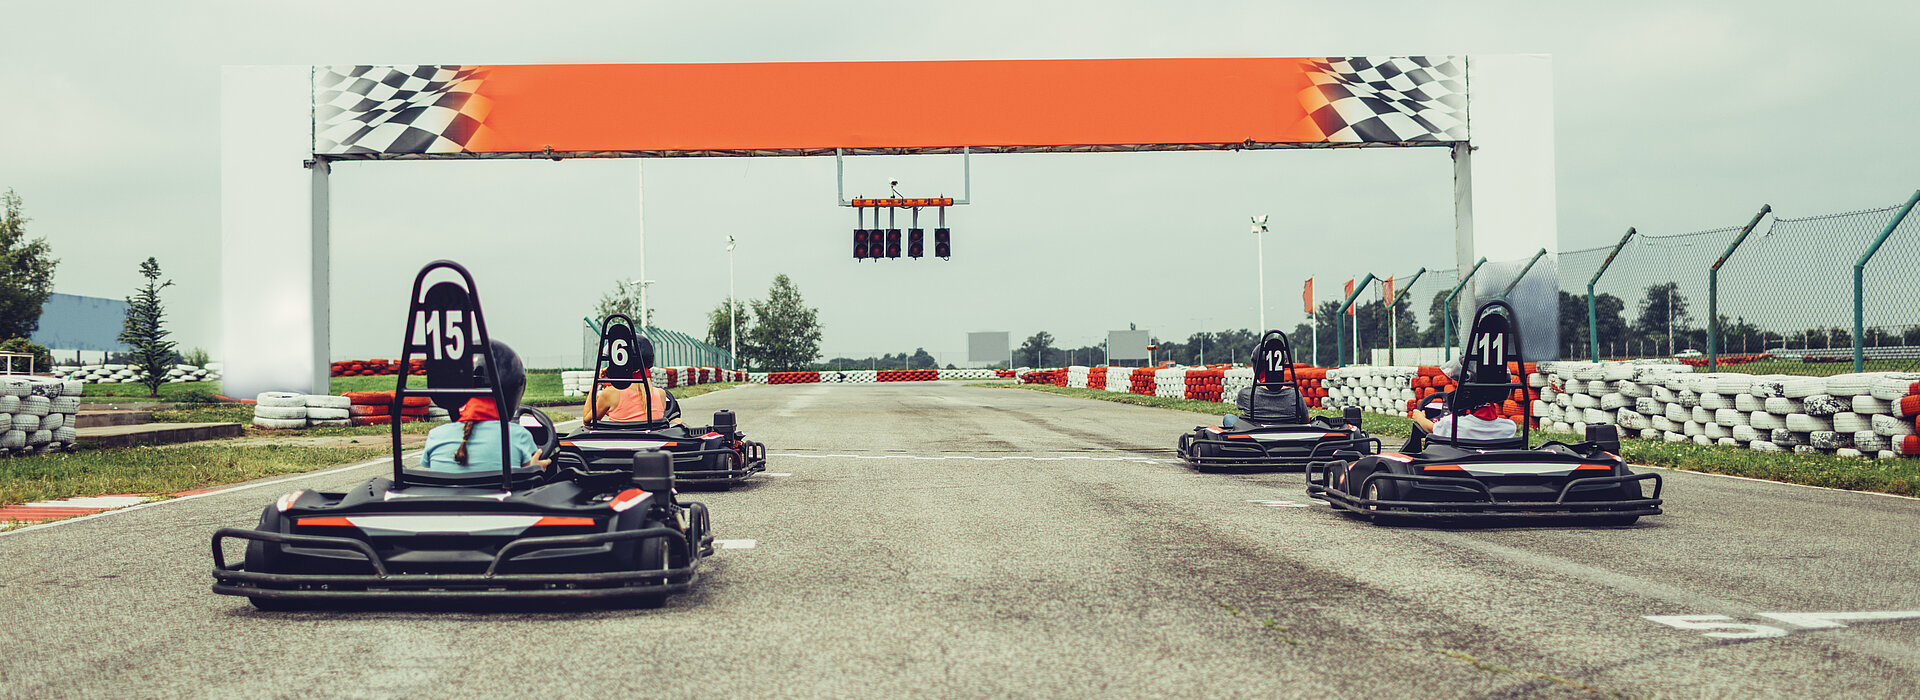 carros de kart posicionados para a largada em uma pista corrida 